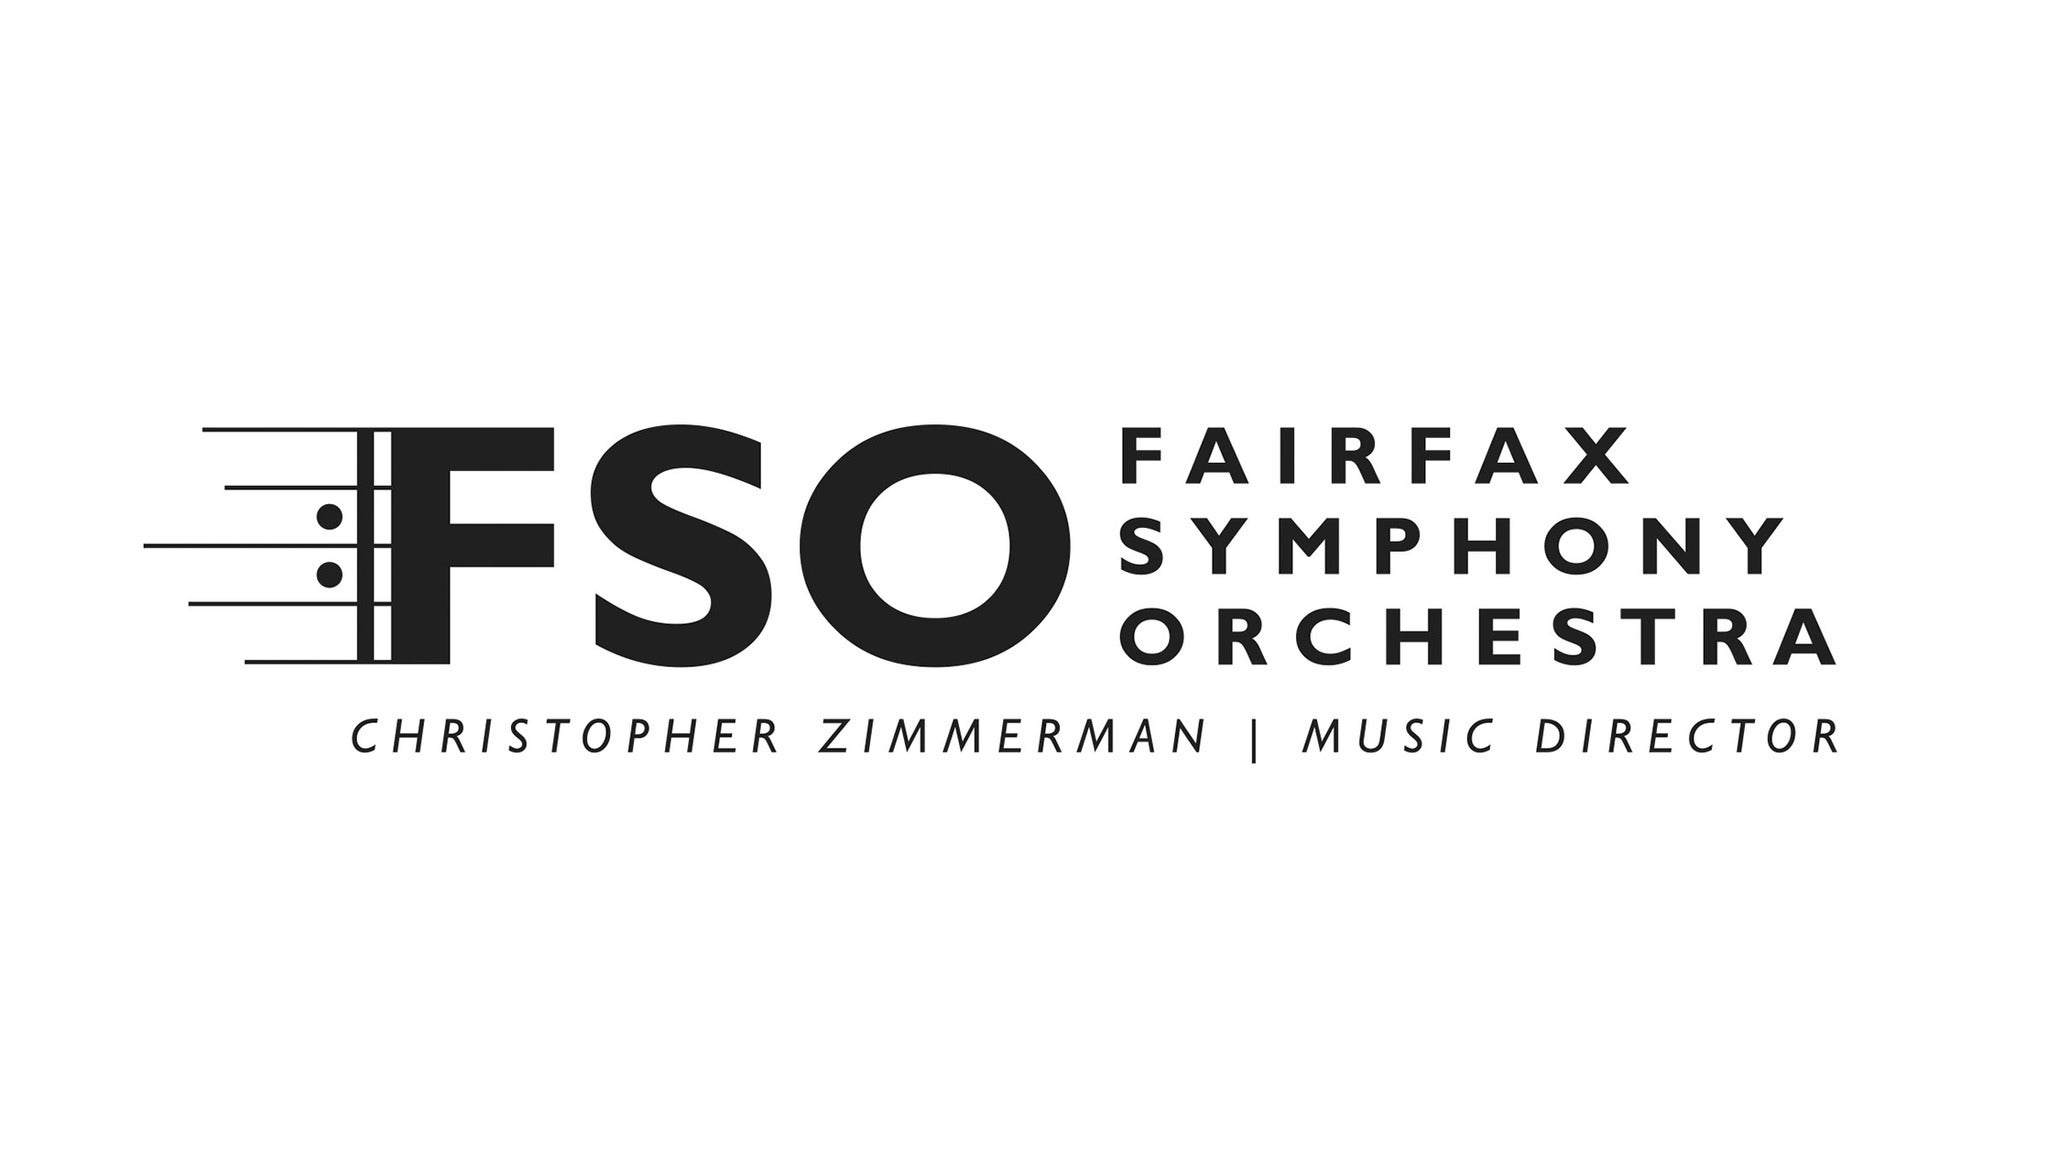 Fairfax Symphony Orchestra